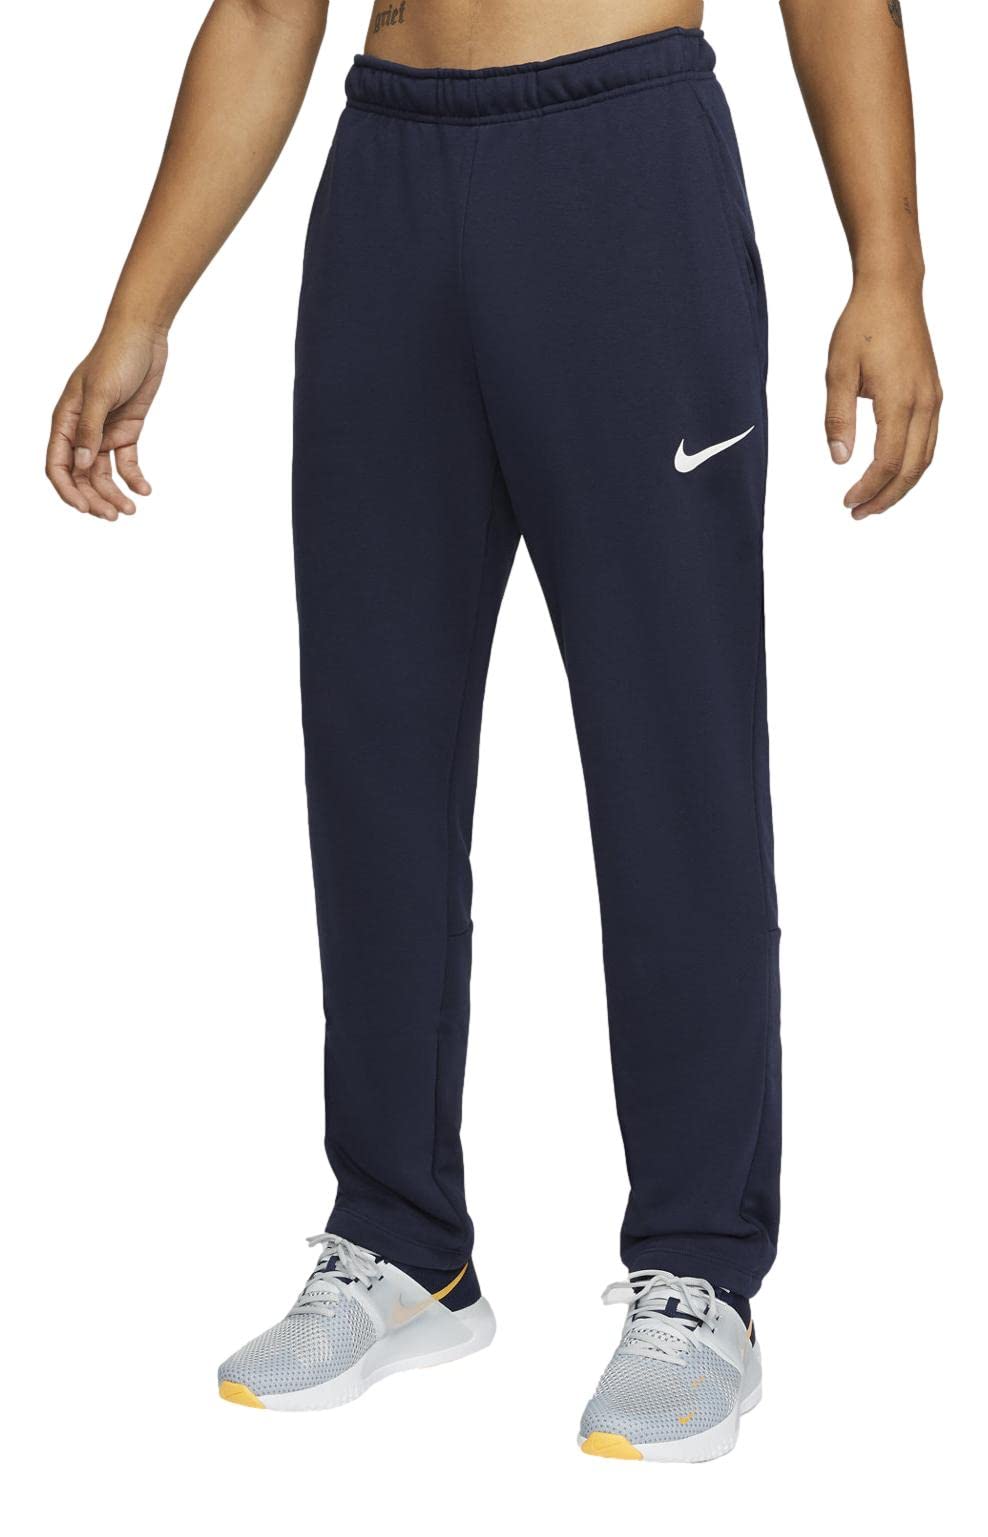 Quần dài thể thao Nike Men's Woven Training Pants - Trắng | Lazada.vn